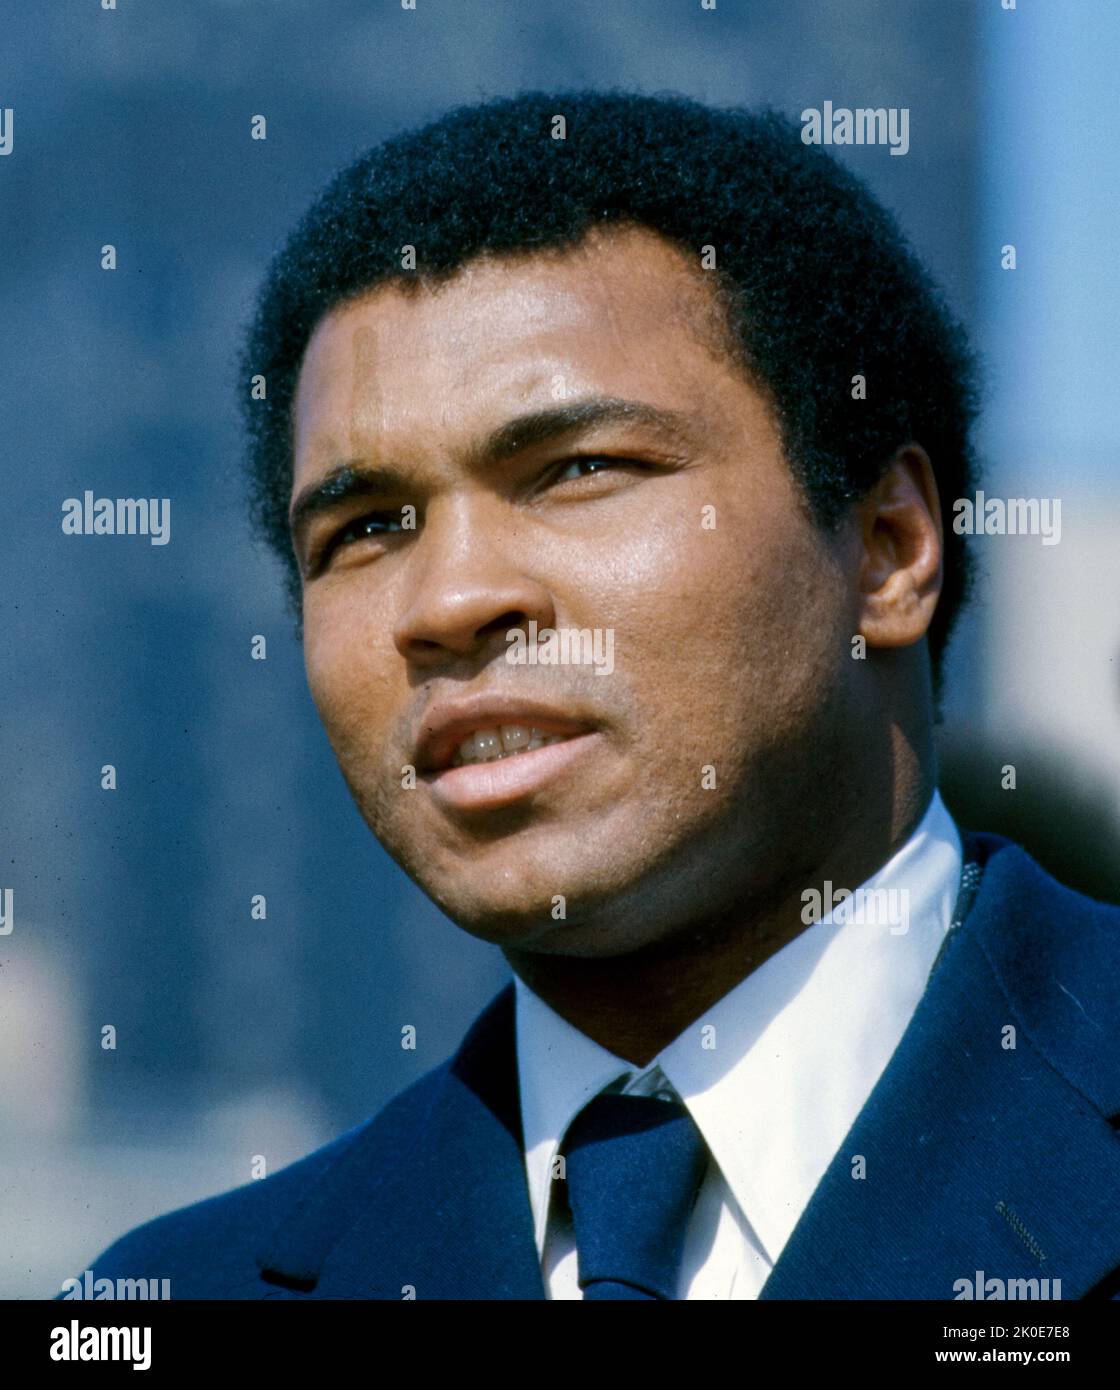 Muhammad Ali (Cassius Marcellus Clay), 1942 - 2016. Pugile professionista americano, attivista, intrattenitore, poeta e filantropo. Soprannominato il più grande, è ampiamente considerato come una delle figure più significative e celebrate del 20th ° secolo. Foto Stock